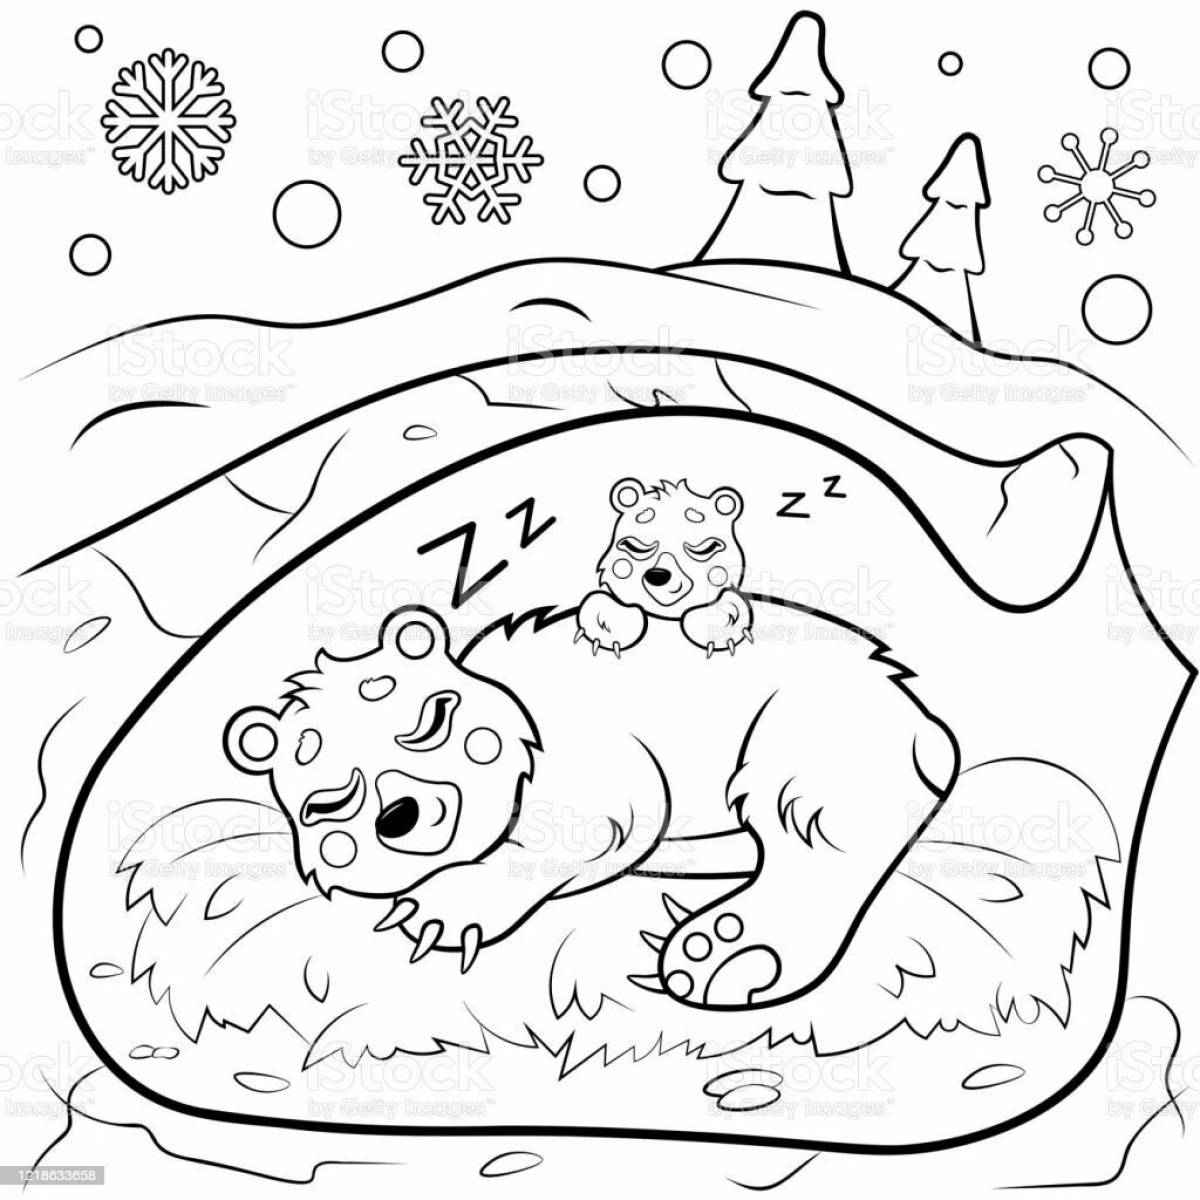 Медведь спит в берлоге для детей #12